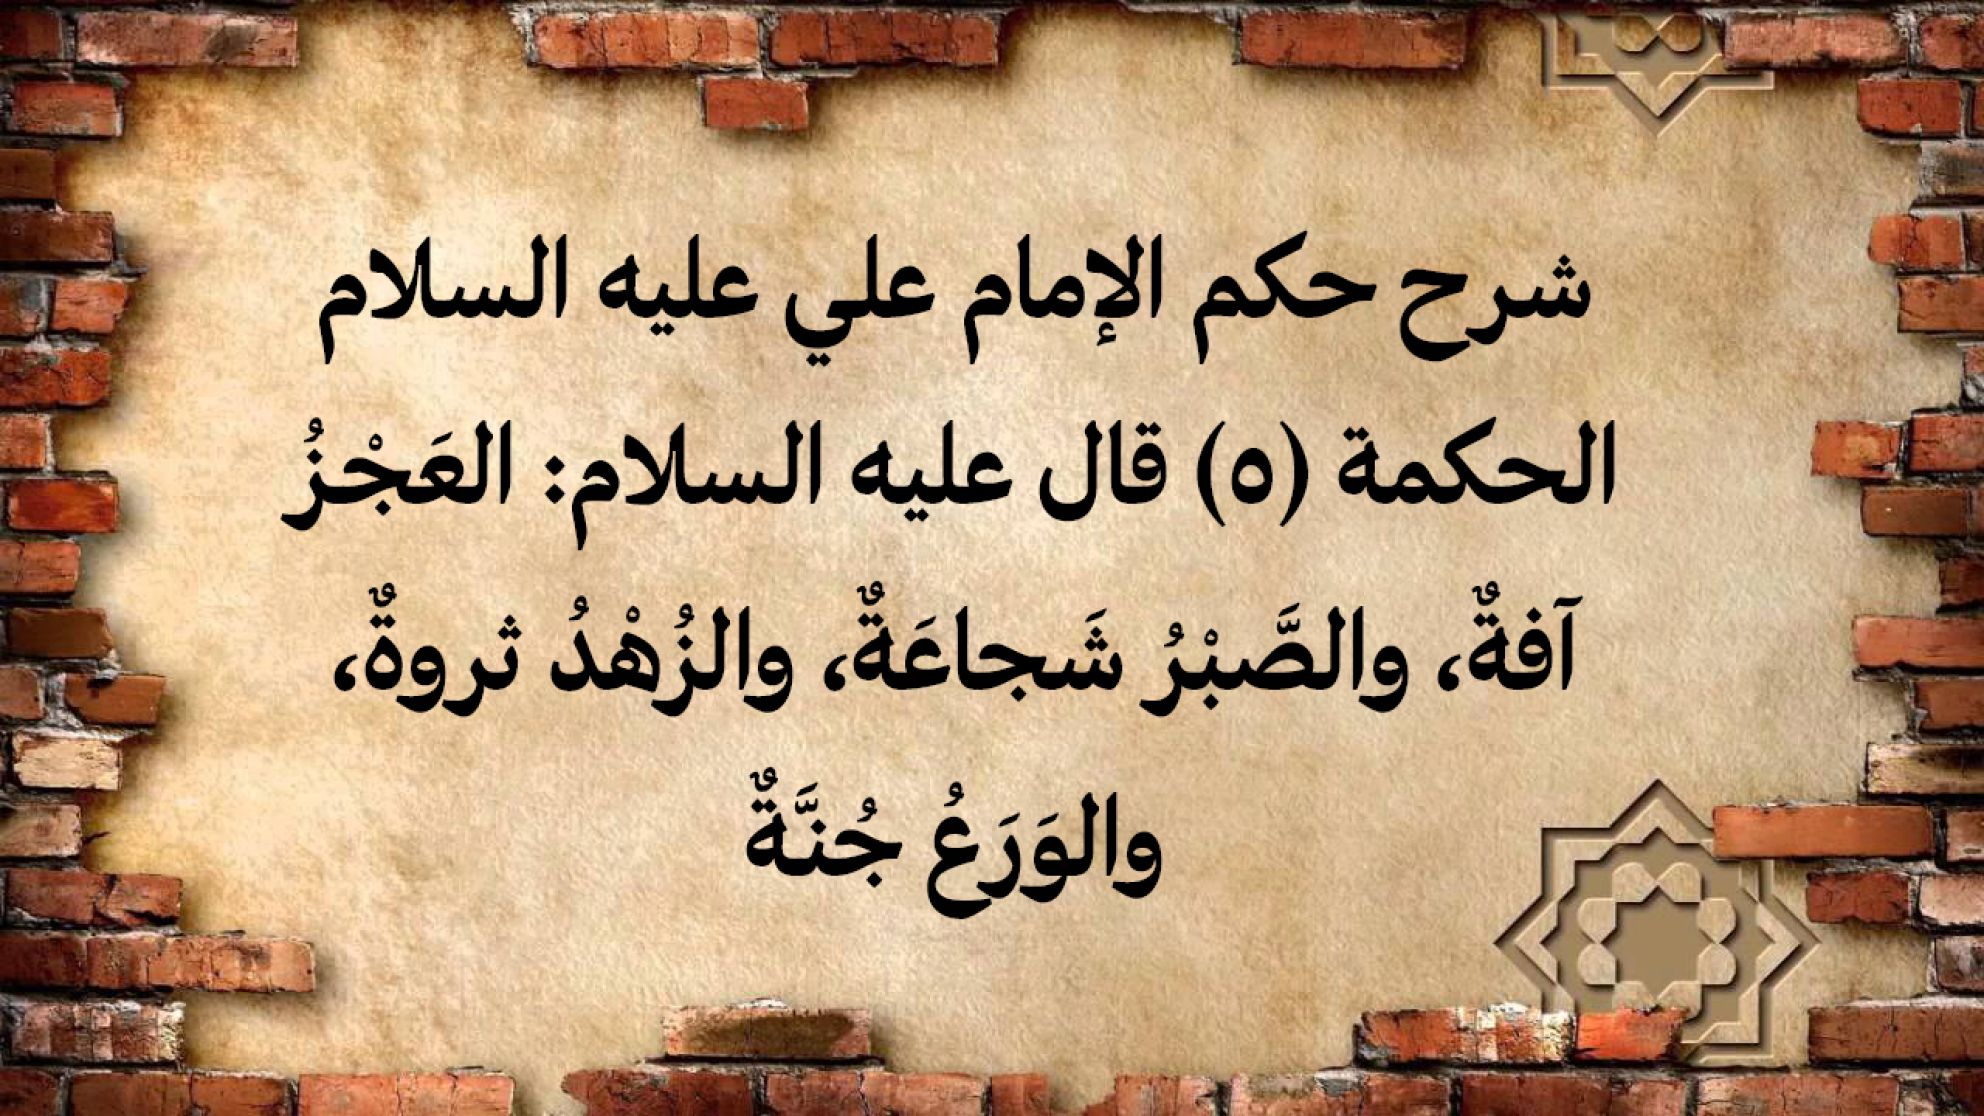 شرح حكم الإمام علي عليه السلام الحكمة (5) قال عليه السلام: العَجْـزُ آفةٌ، والصَّبْرُ شَجاعَةٌ، والزُهْدُ ثروةٌ، والوَرَعُ جُنـَّةٌ